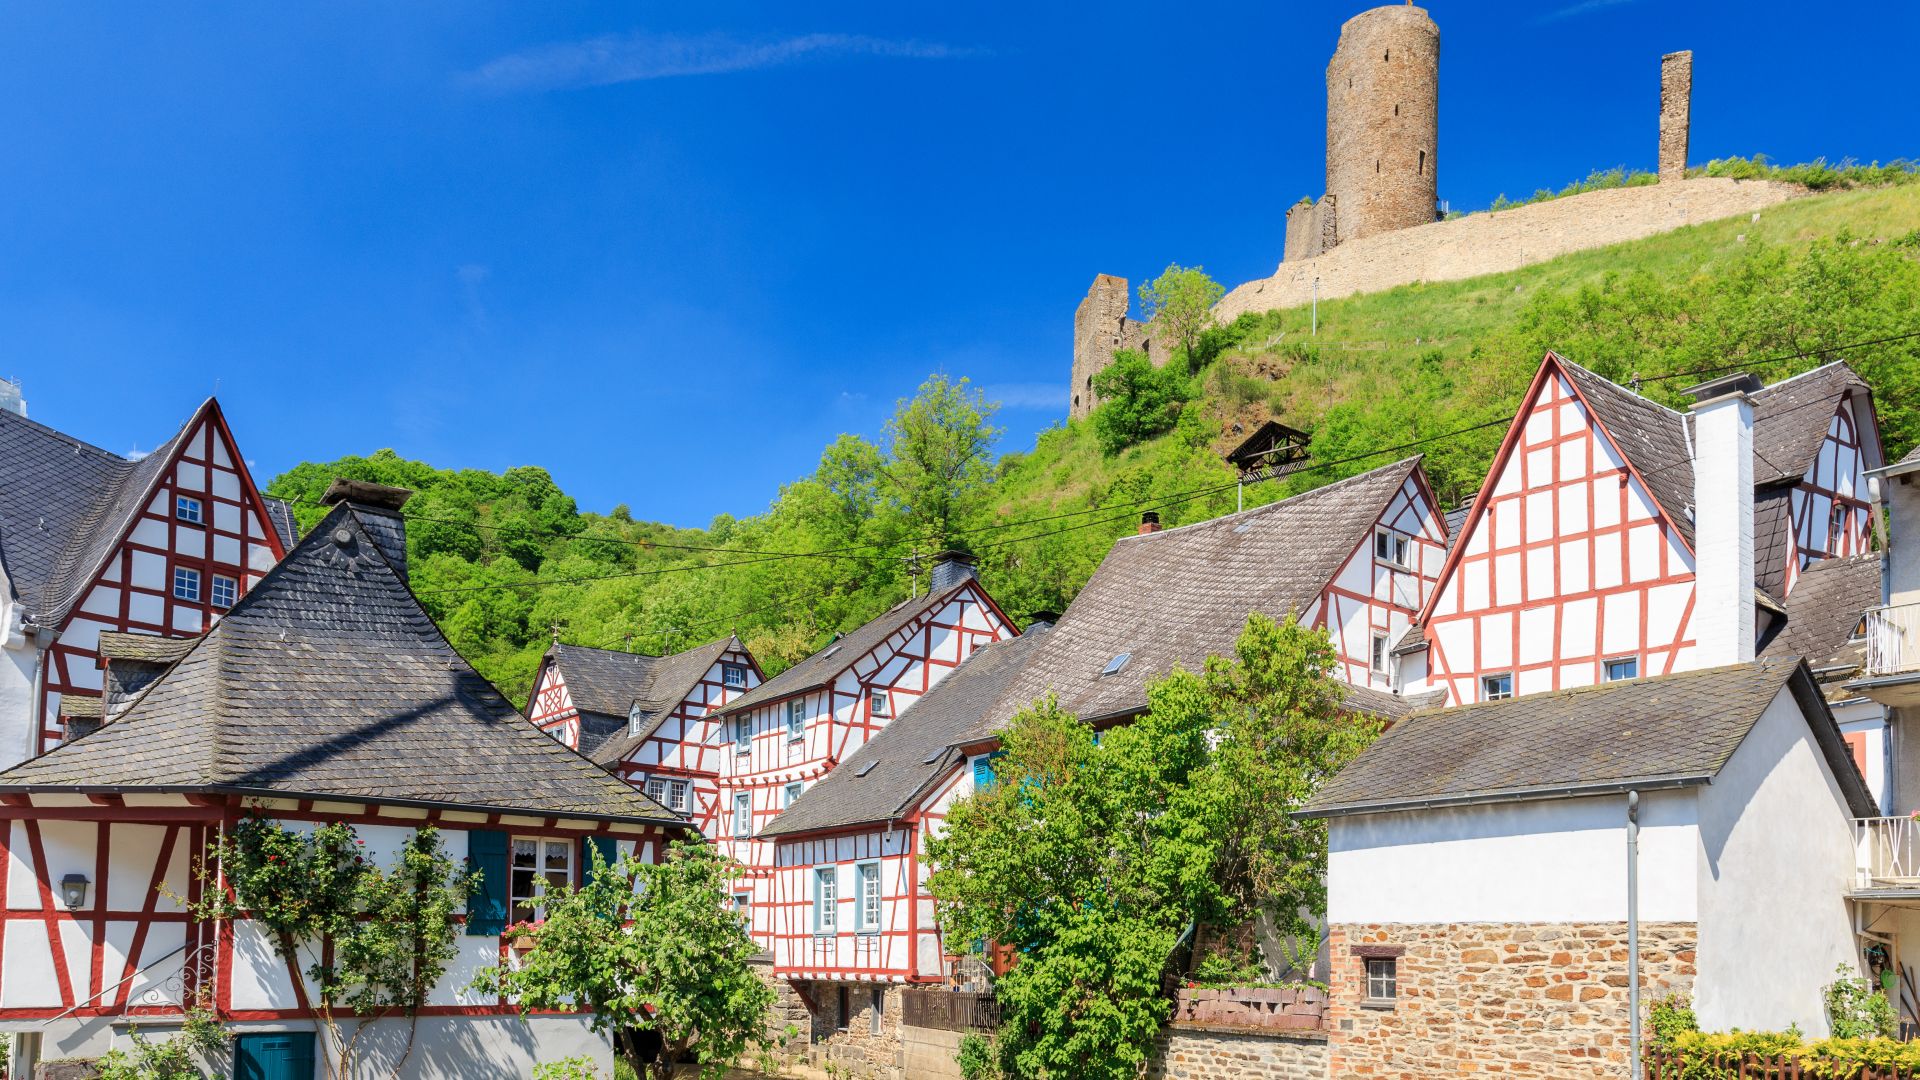 Monreal : Maison à colombage avec ruines du château Löwenburg